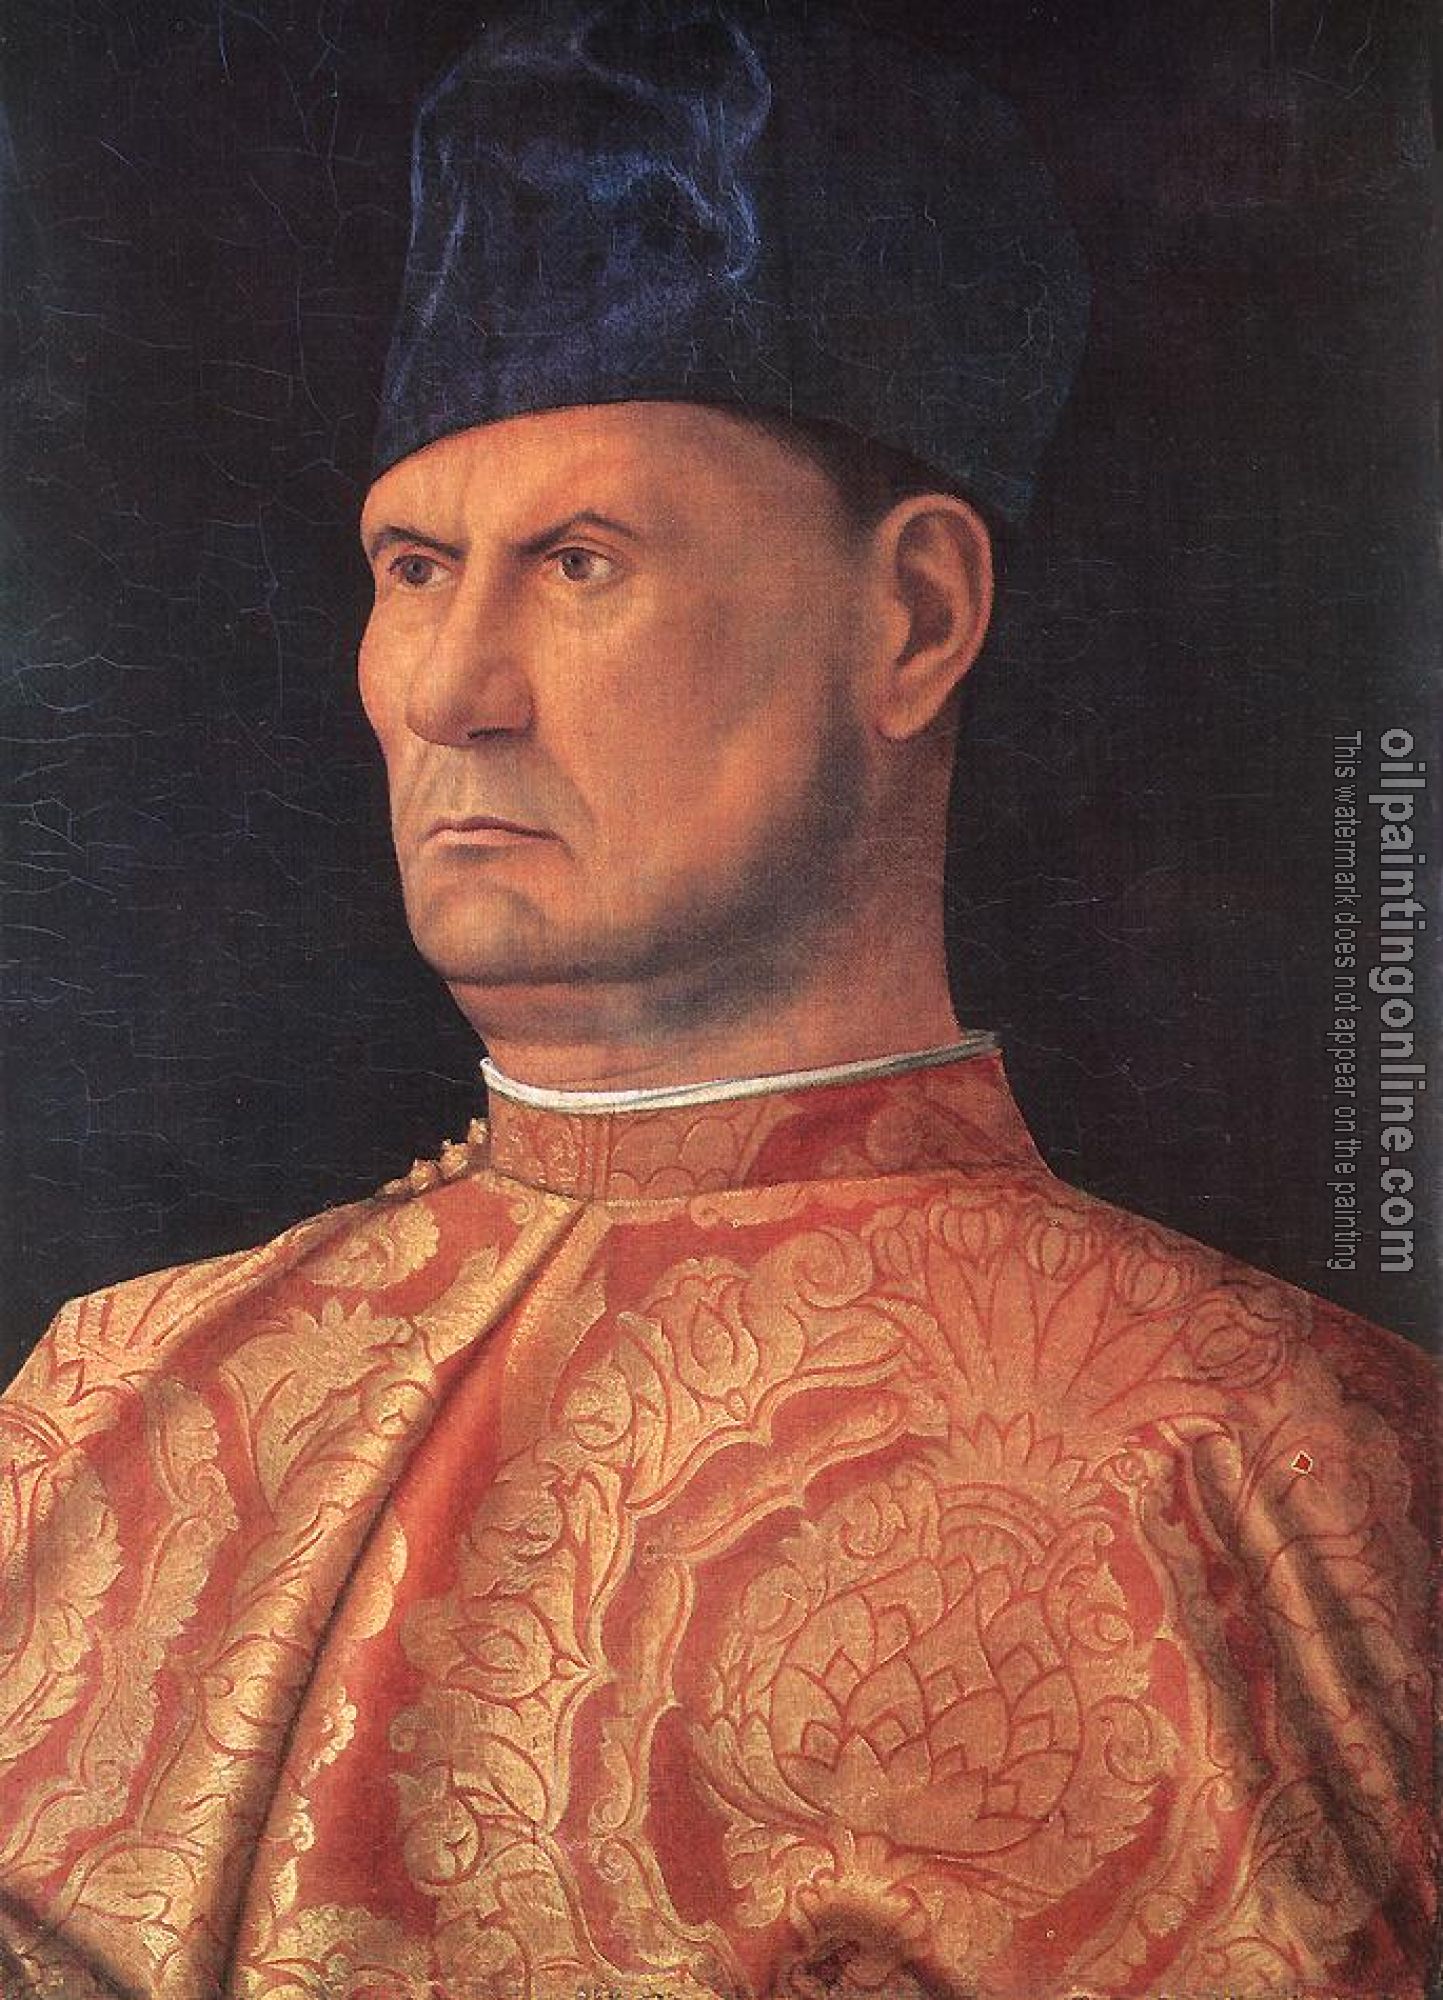 Bellini, Giovanni - Portrait of a condottiere